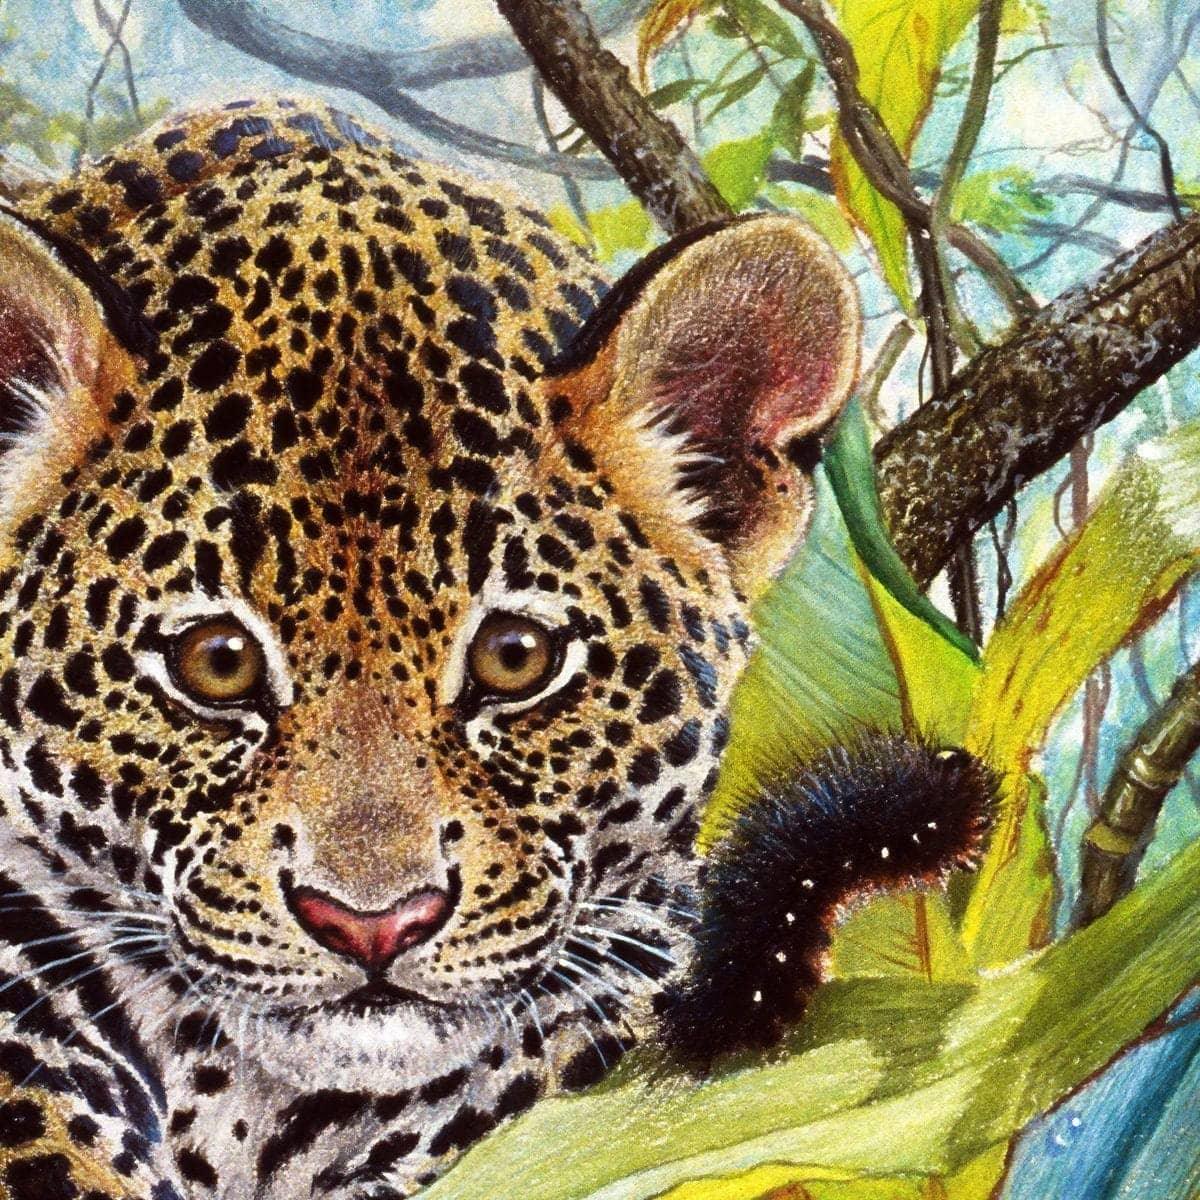 Jaguar Cub - Framed Print | Artwork by Glen Loates